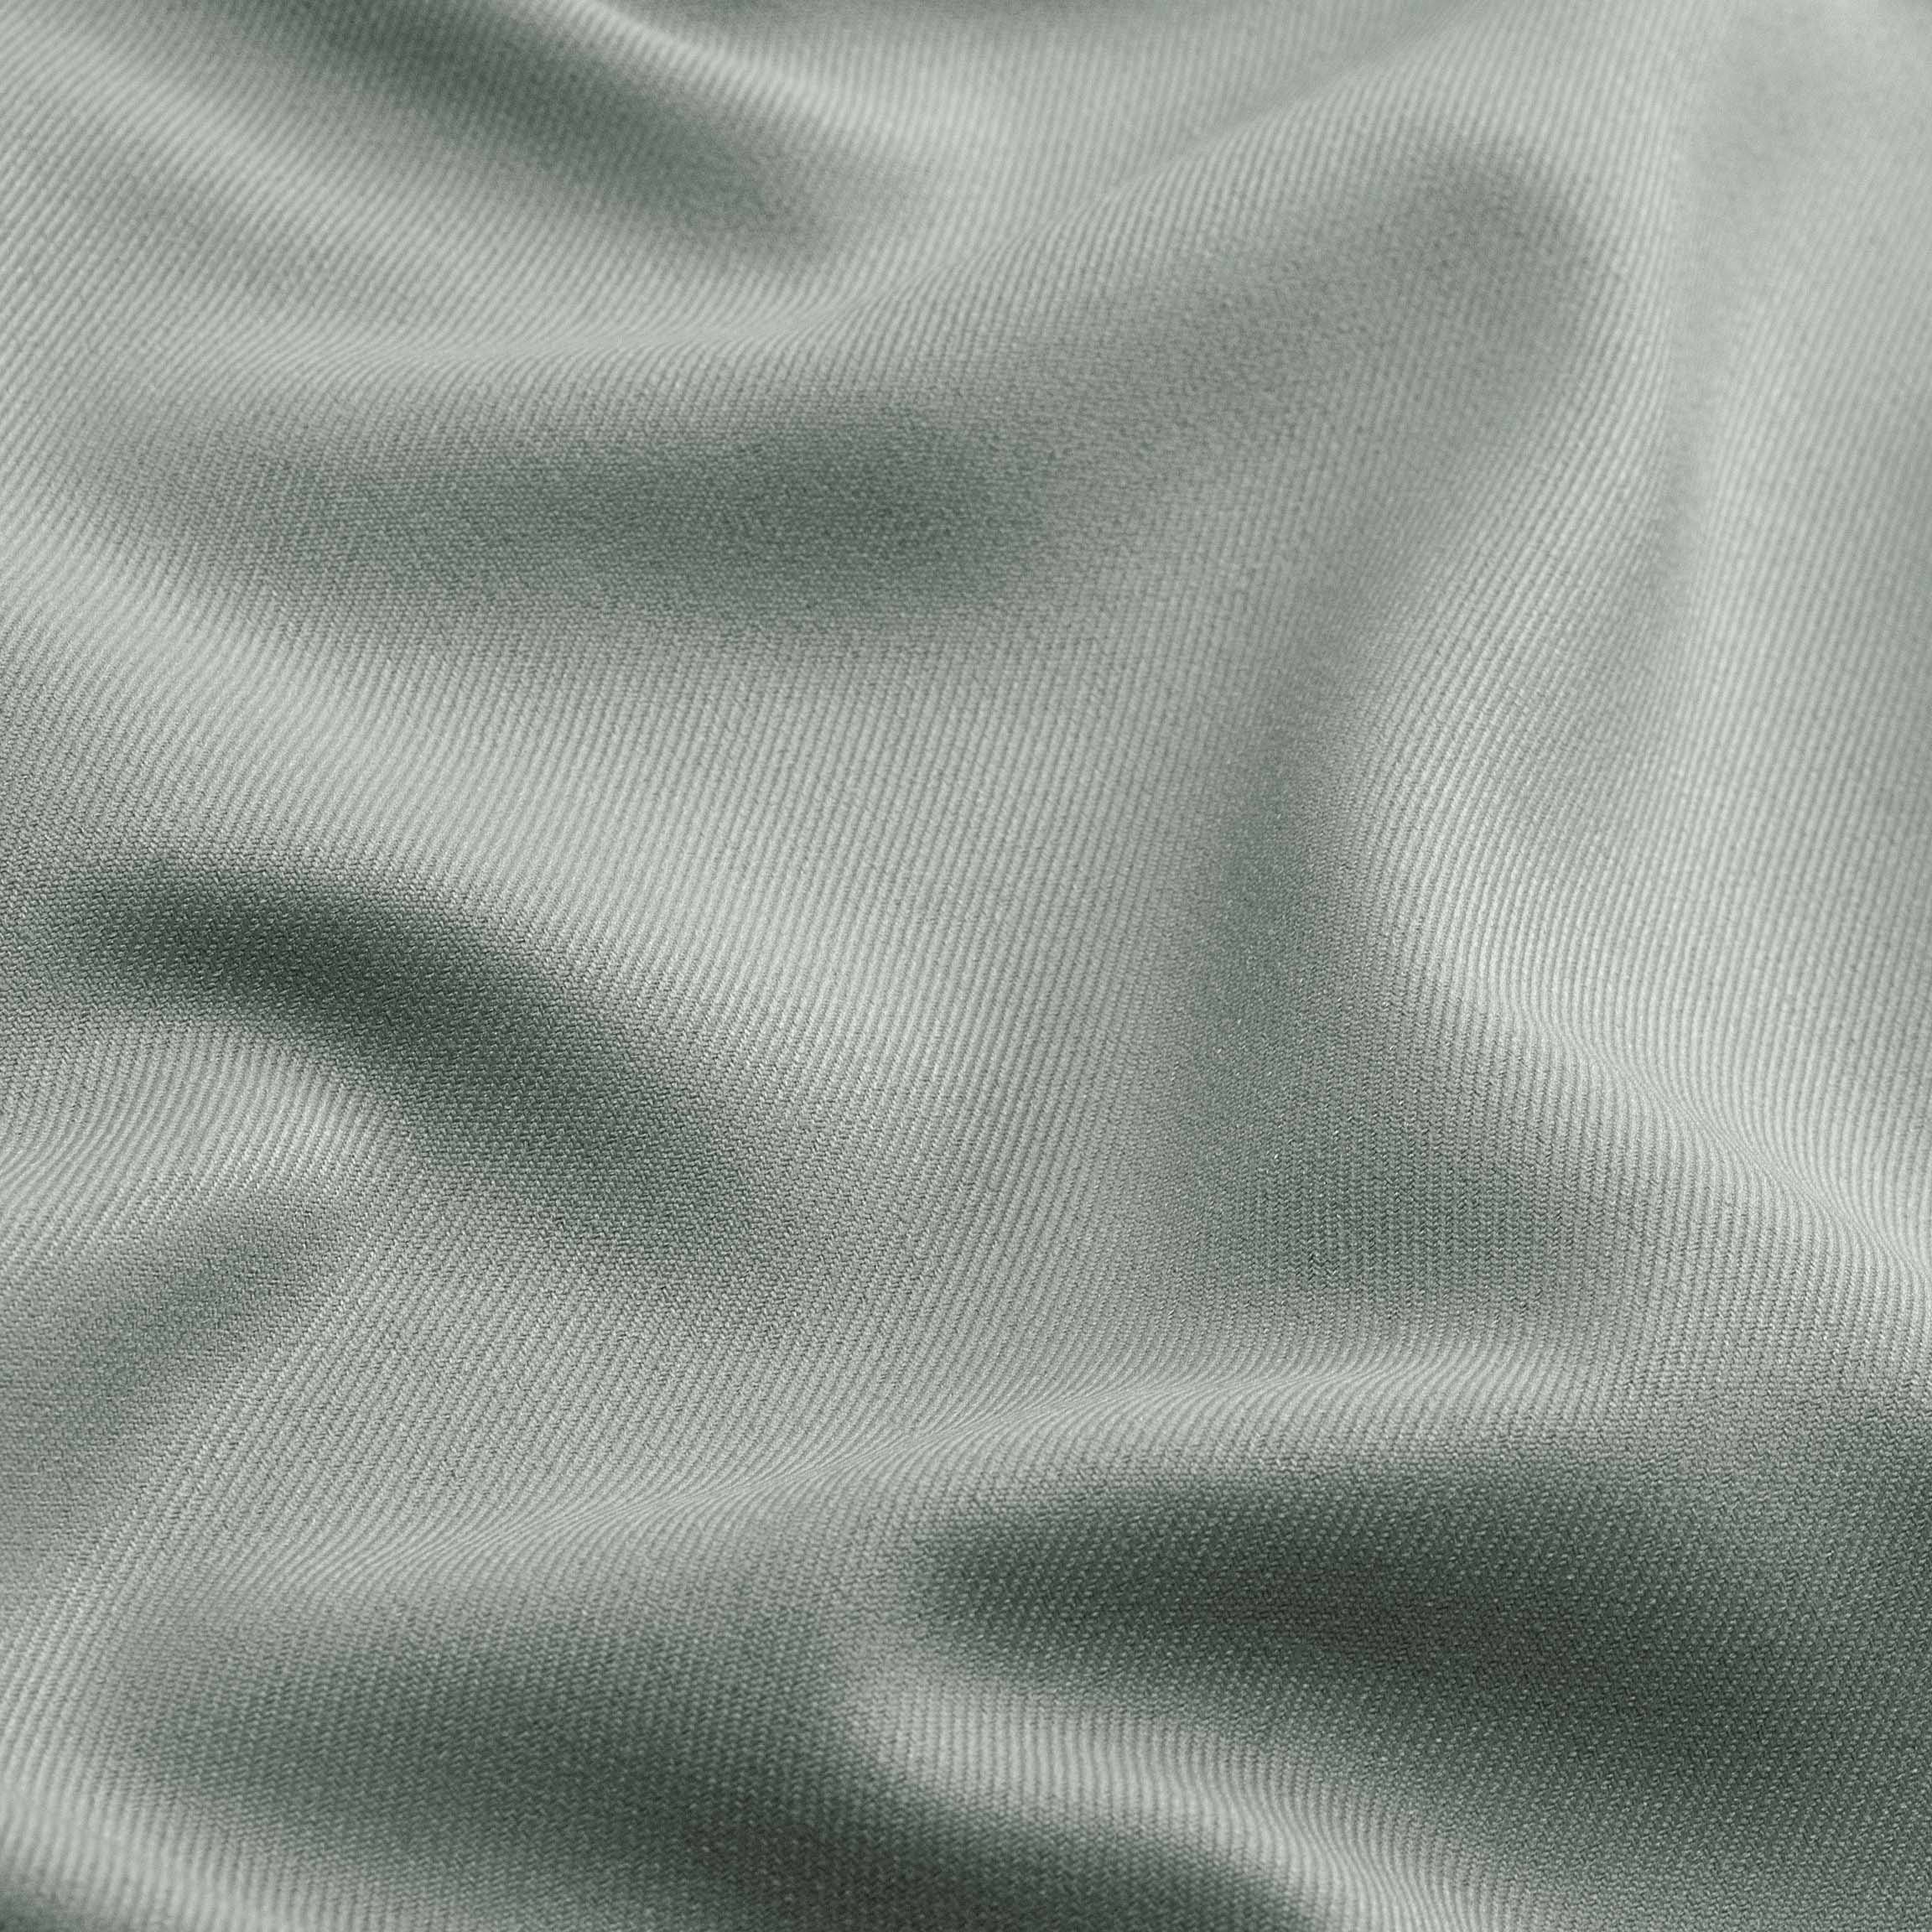  Портьерная ткань SETO GREY, ширина 280 см  - Фото